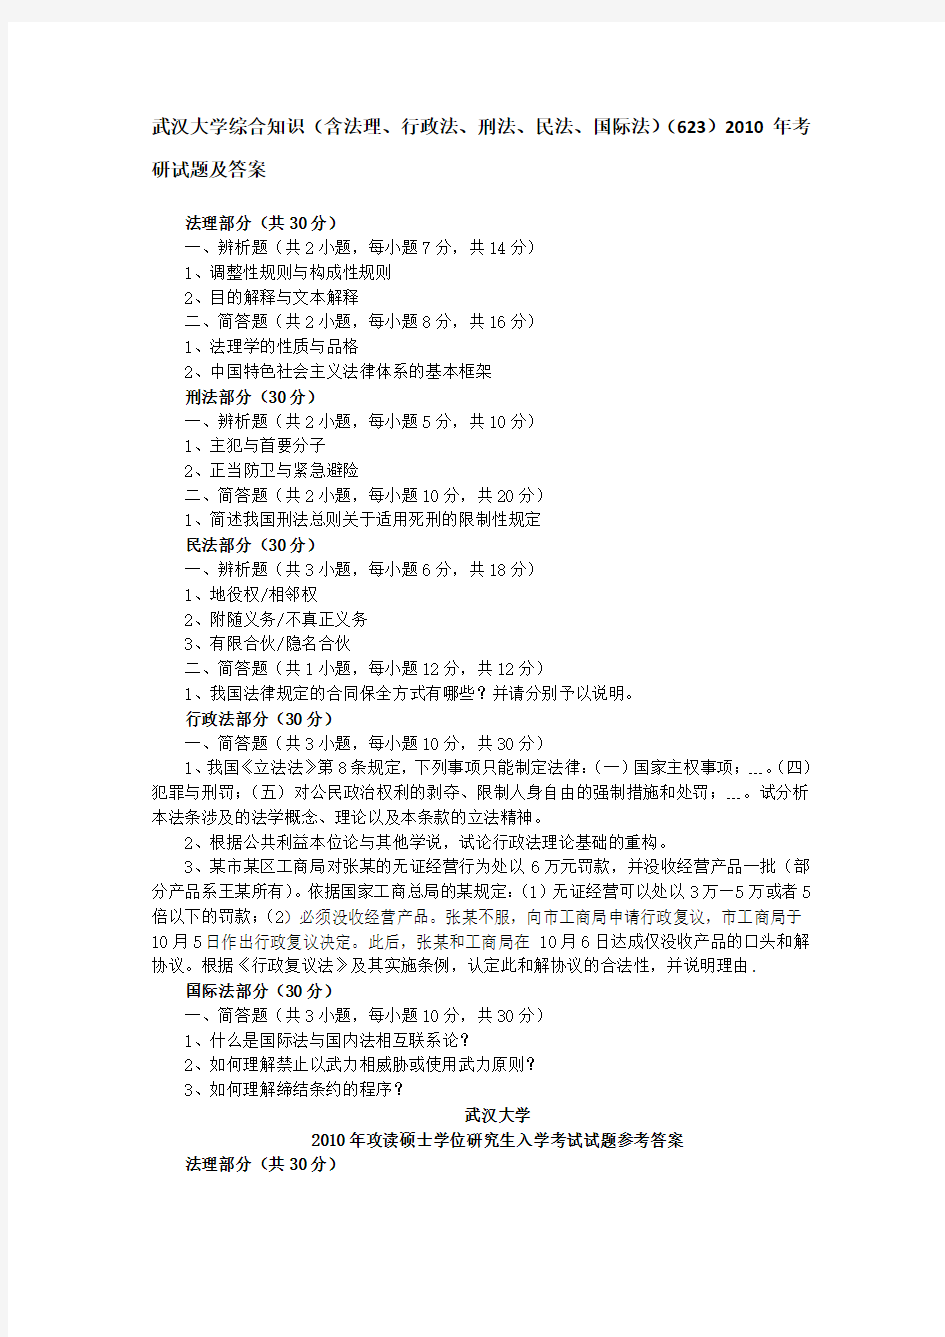 武汉大学综合知识(含法理、行政法、刑法、民法、国际法)(623)2010年考研试题及答案